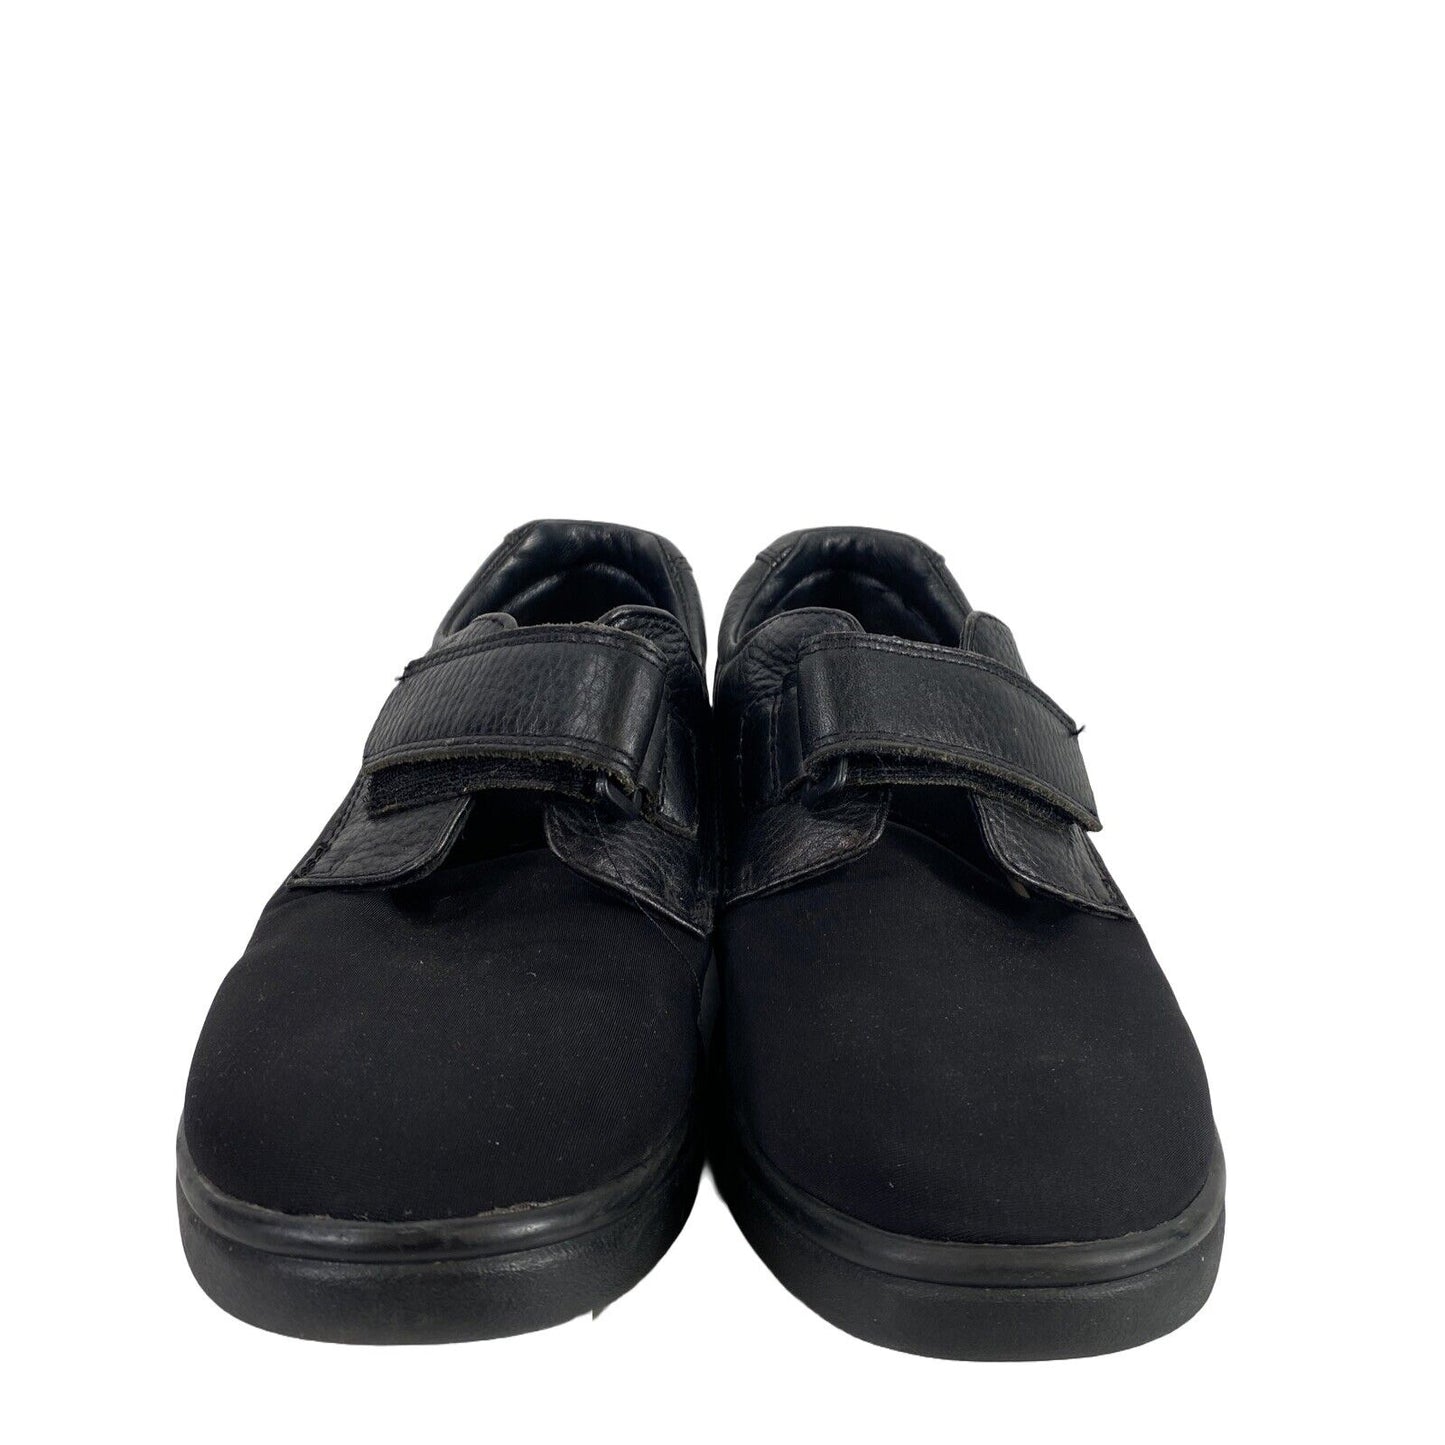 Dr. Comfort Women's Black Leather Annie Comfort Shoes - 9.5M